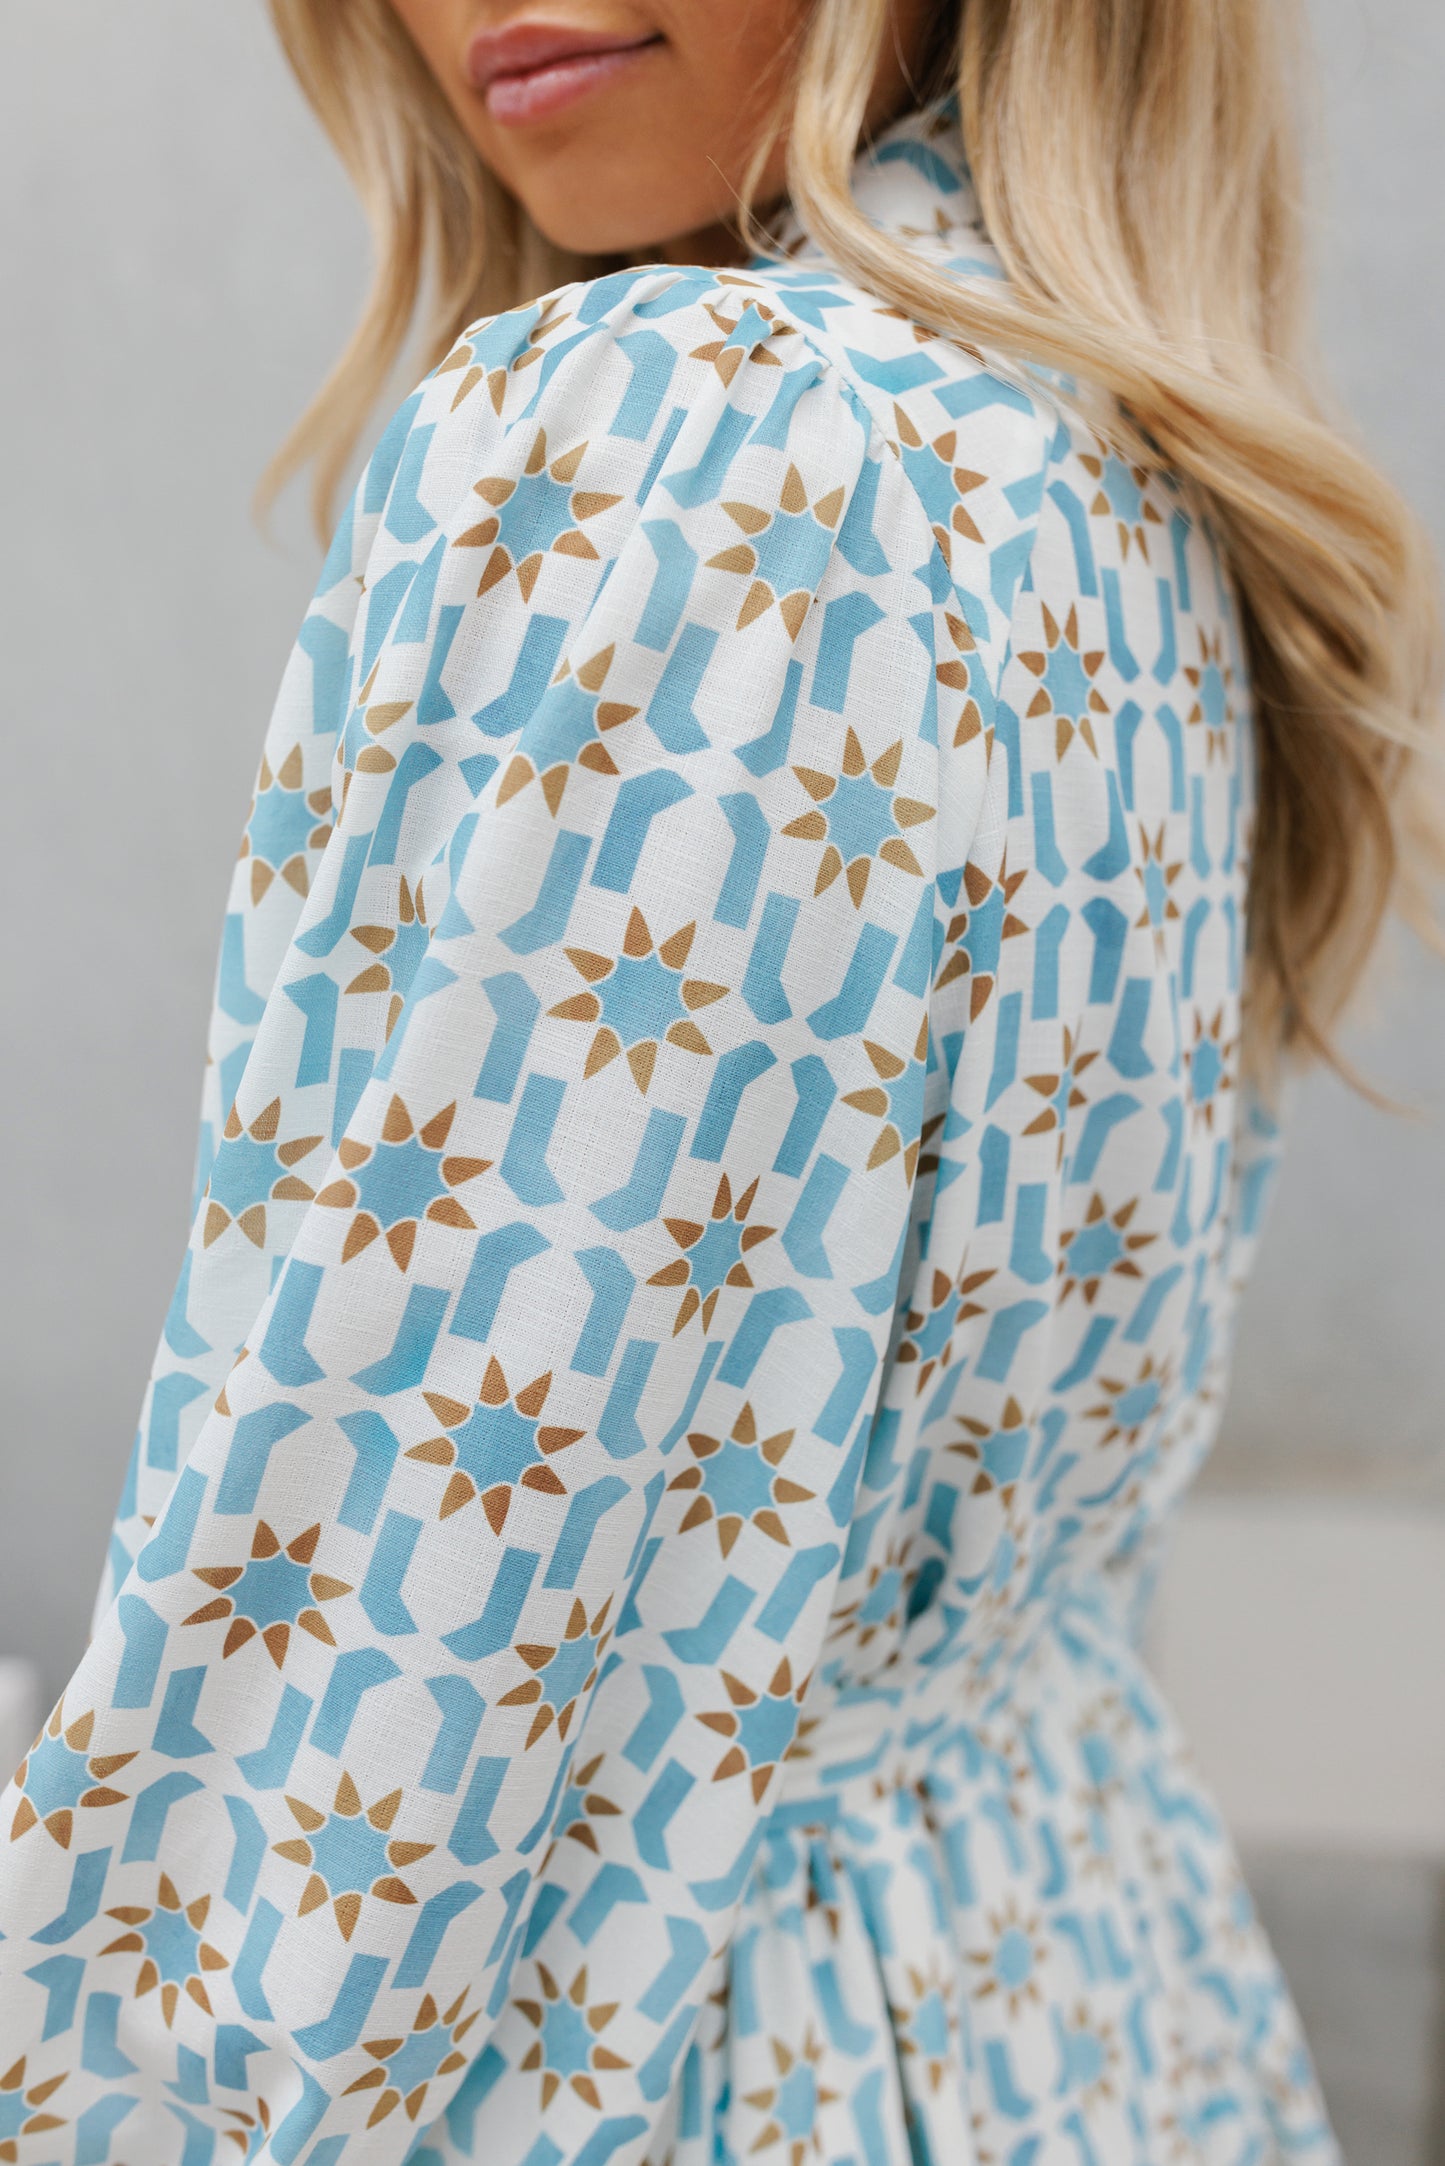 Qualia Dress - Blue Star Print